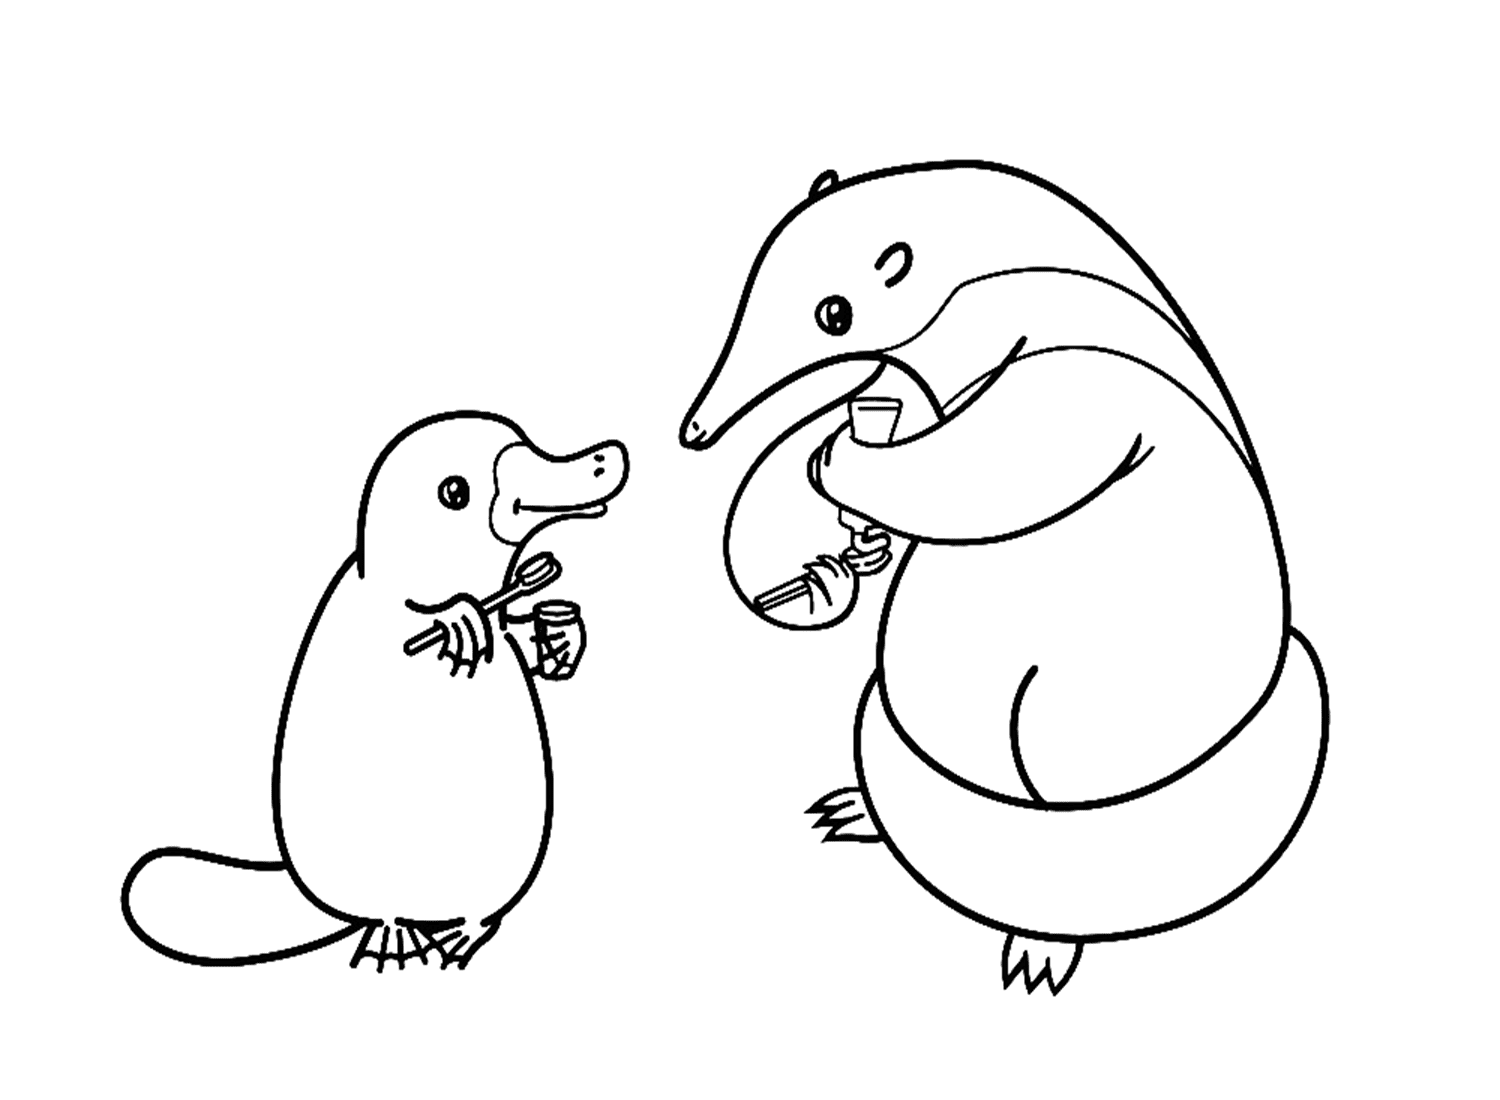 Hormiguero y ornitorrinco de Platypus